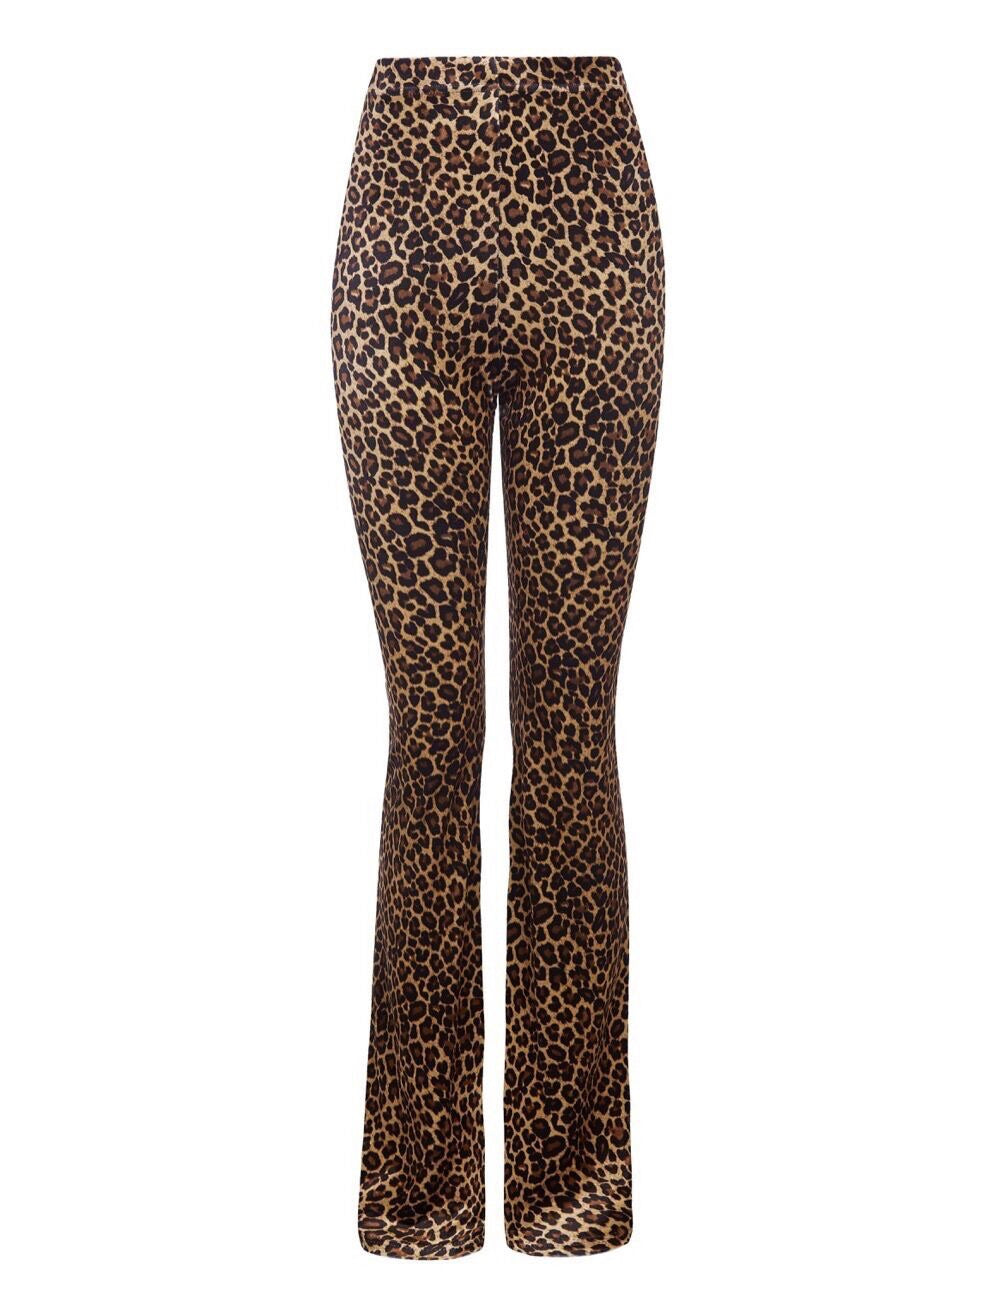 Leopard SAS pants